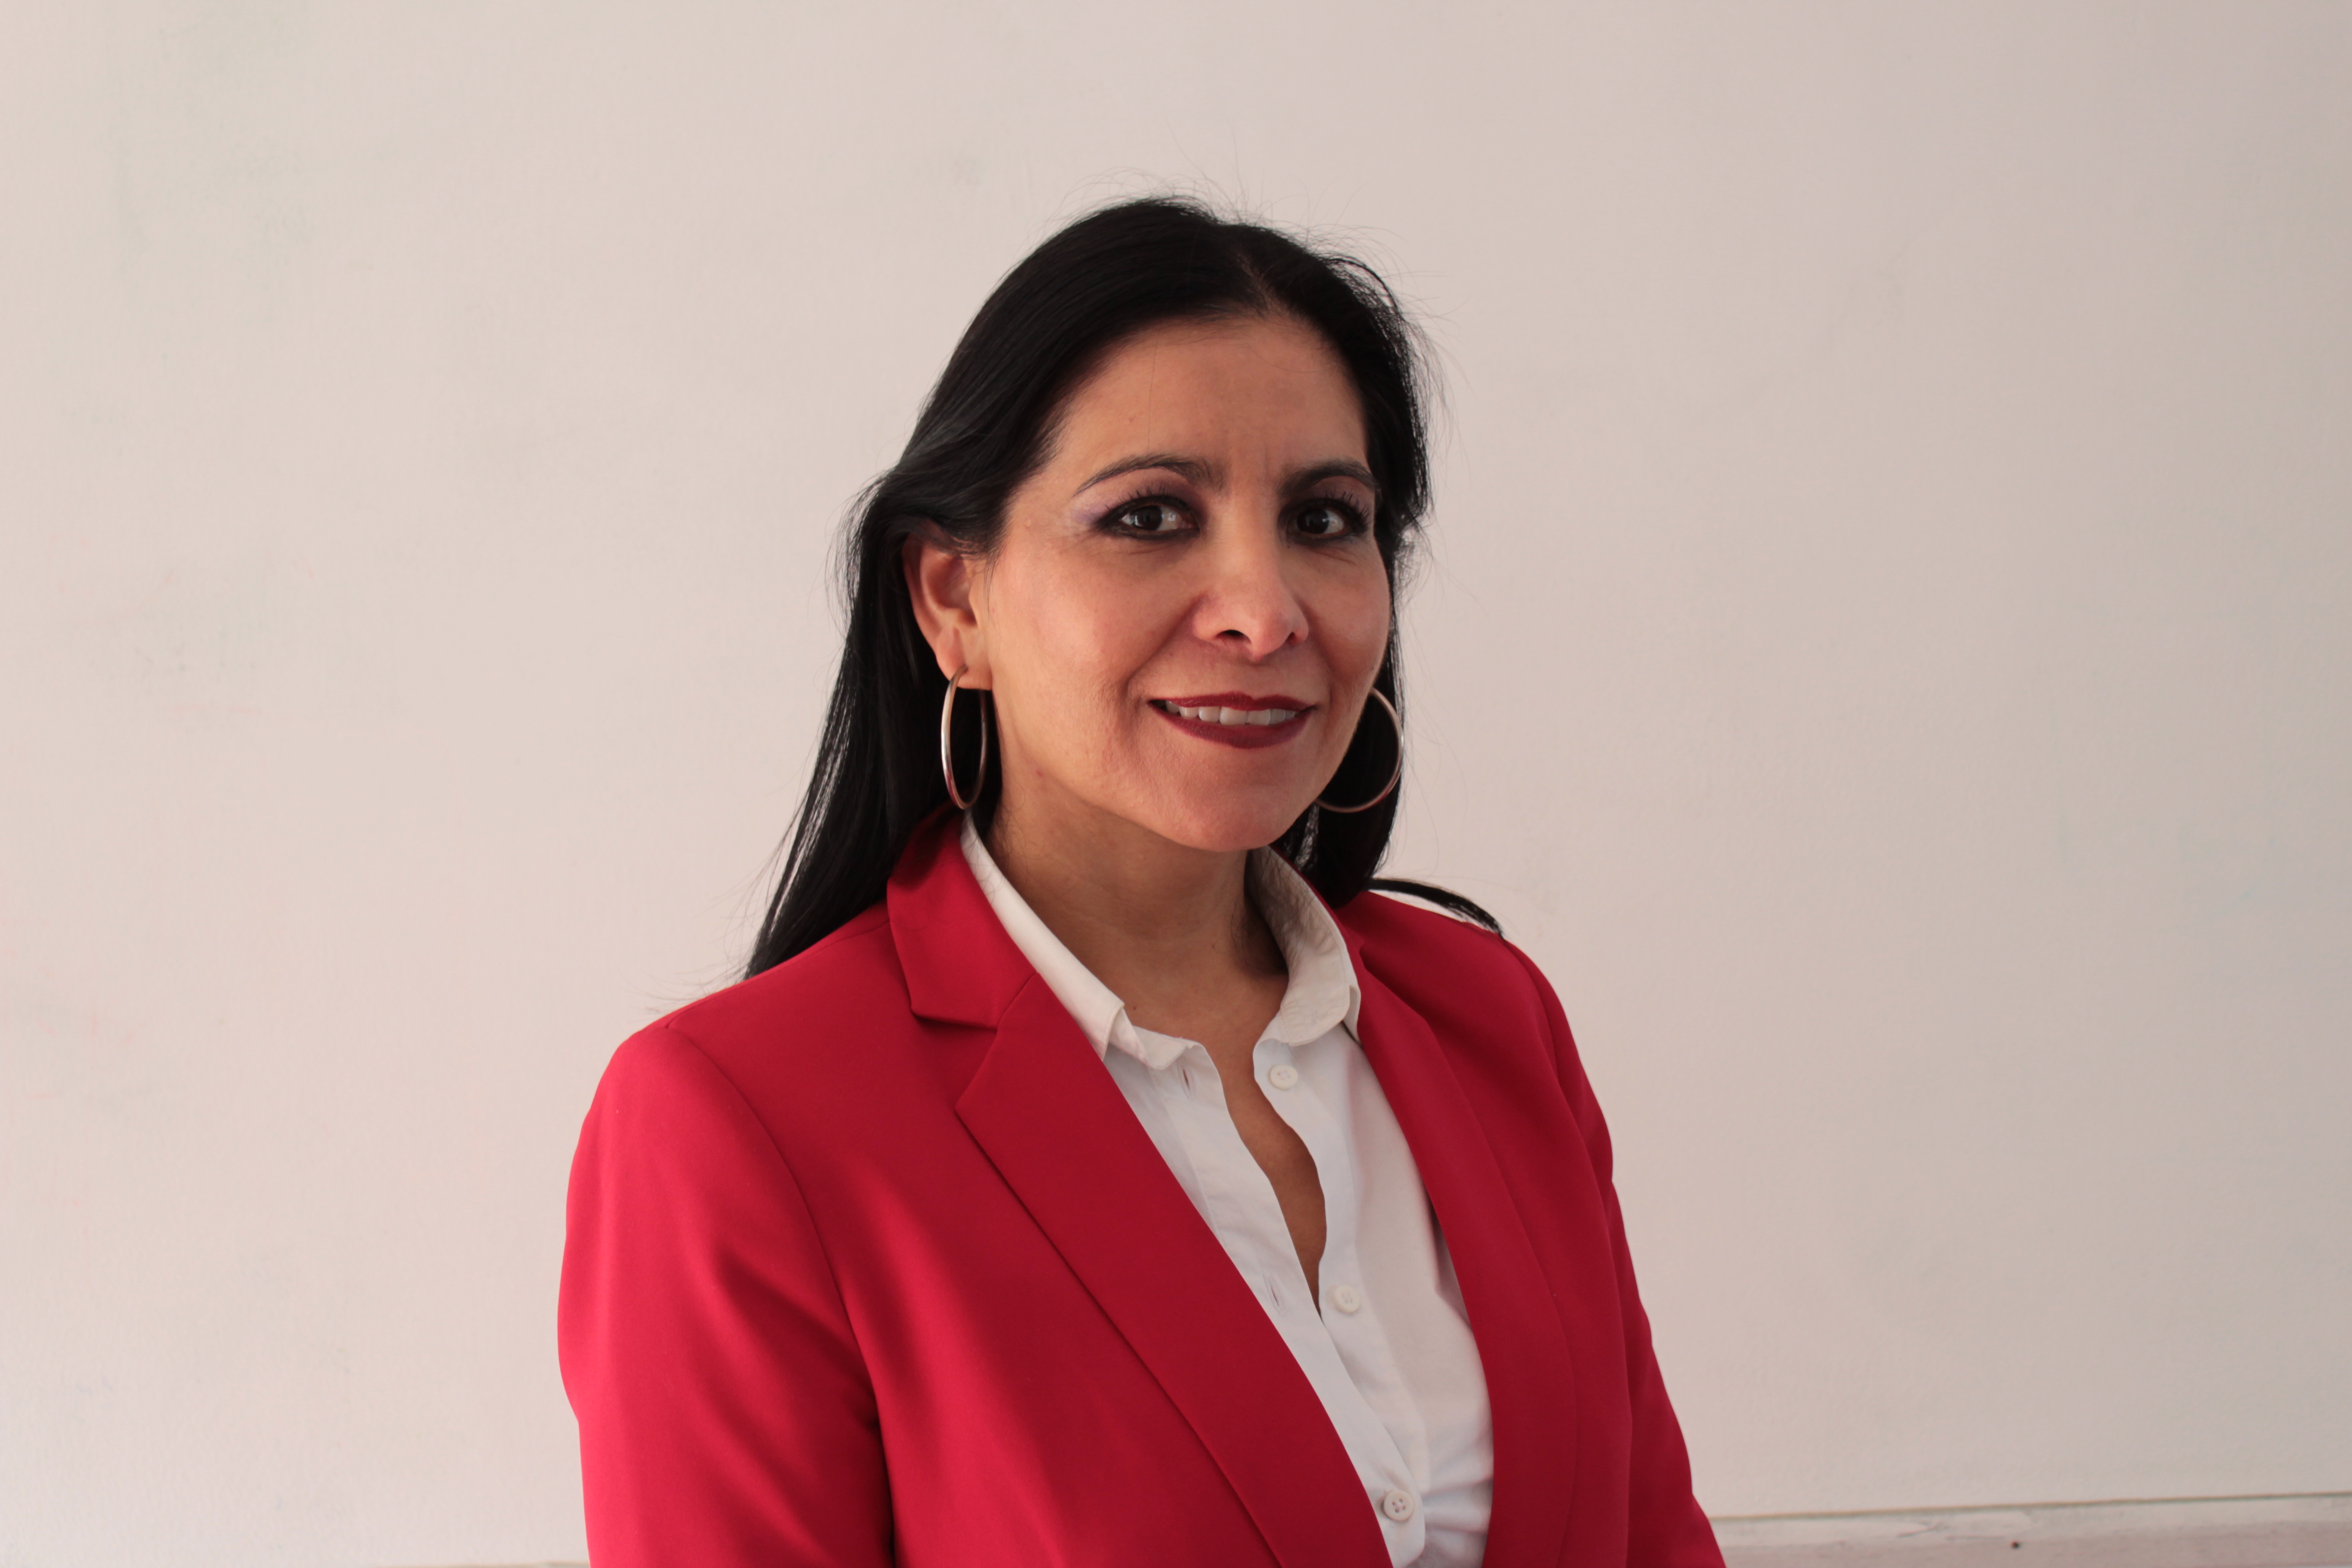 Carmen-Consultora Sr. Especialista en integración y solución de PYMES y empresas familiares